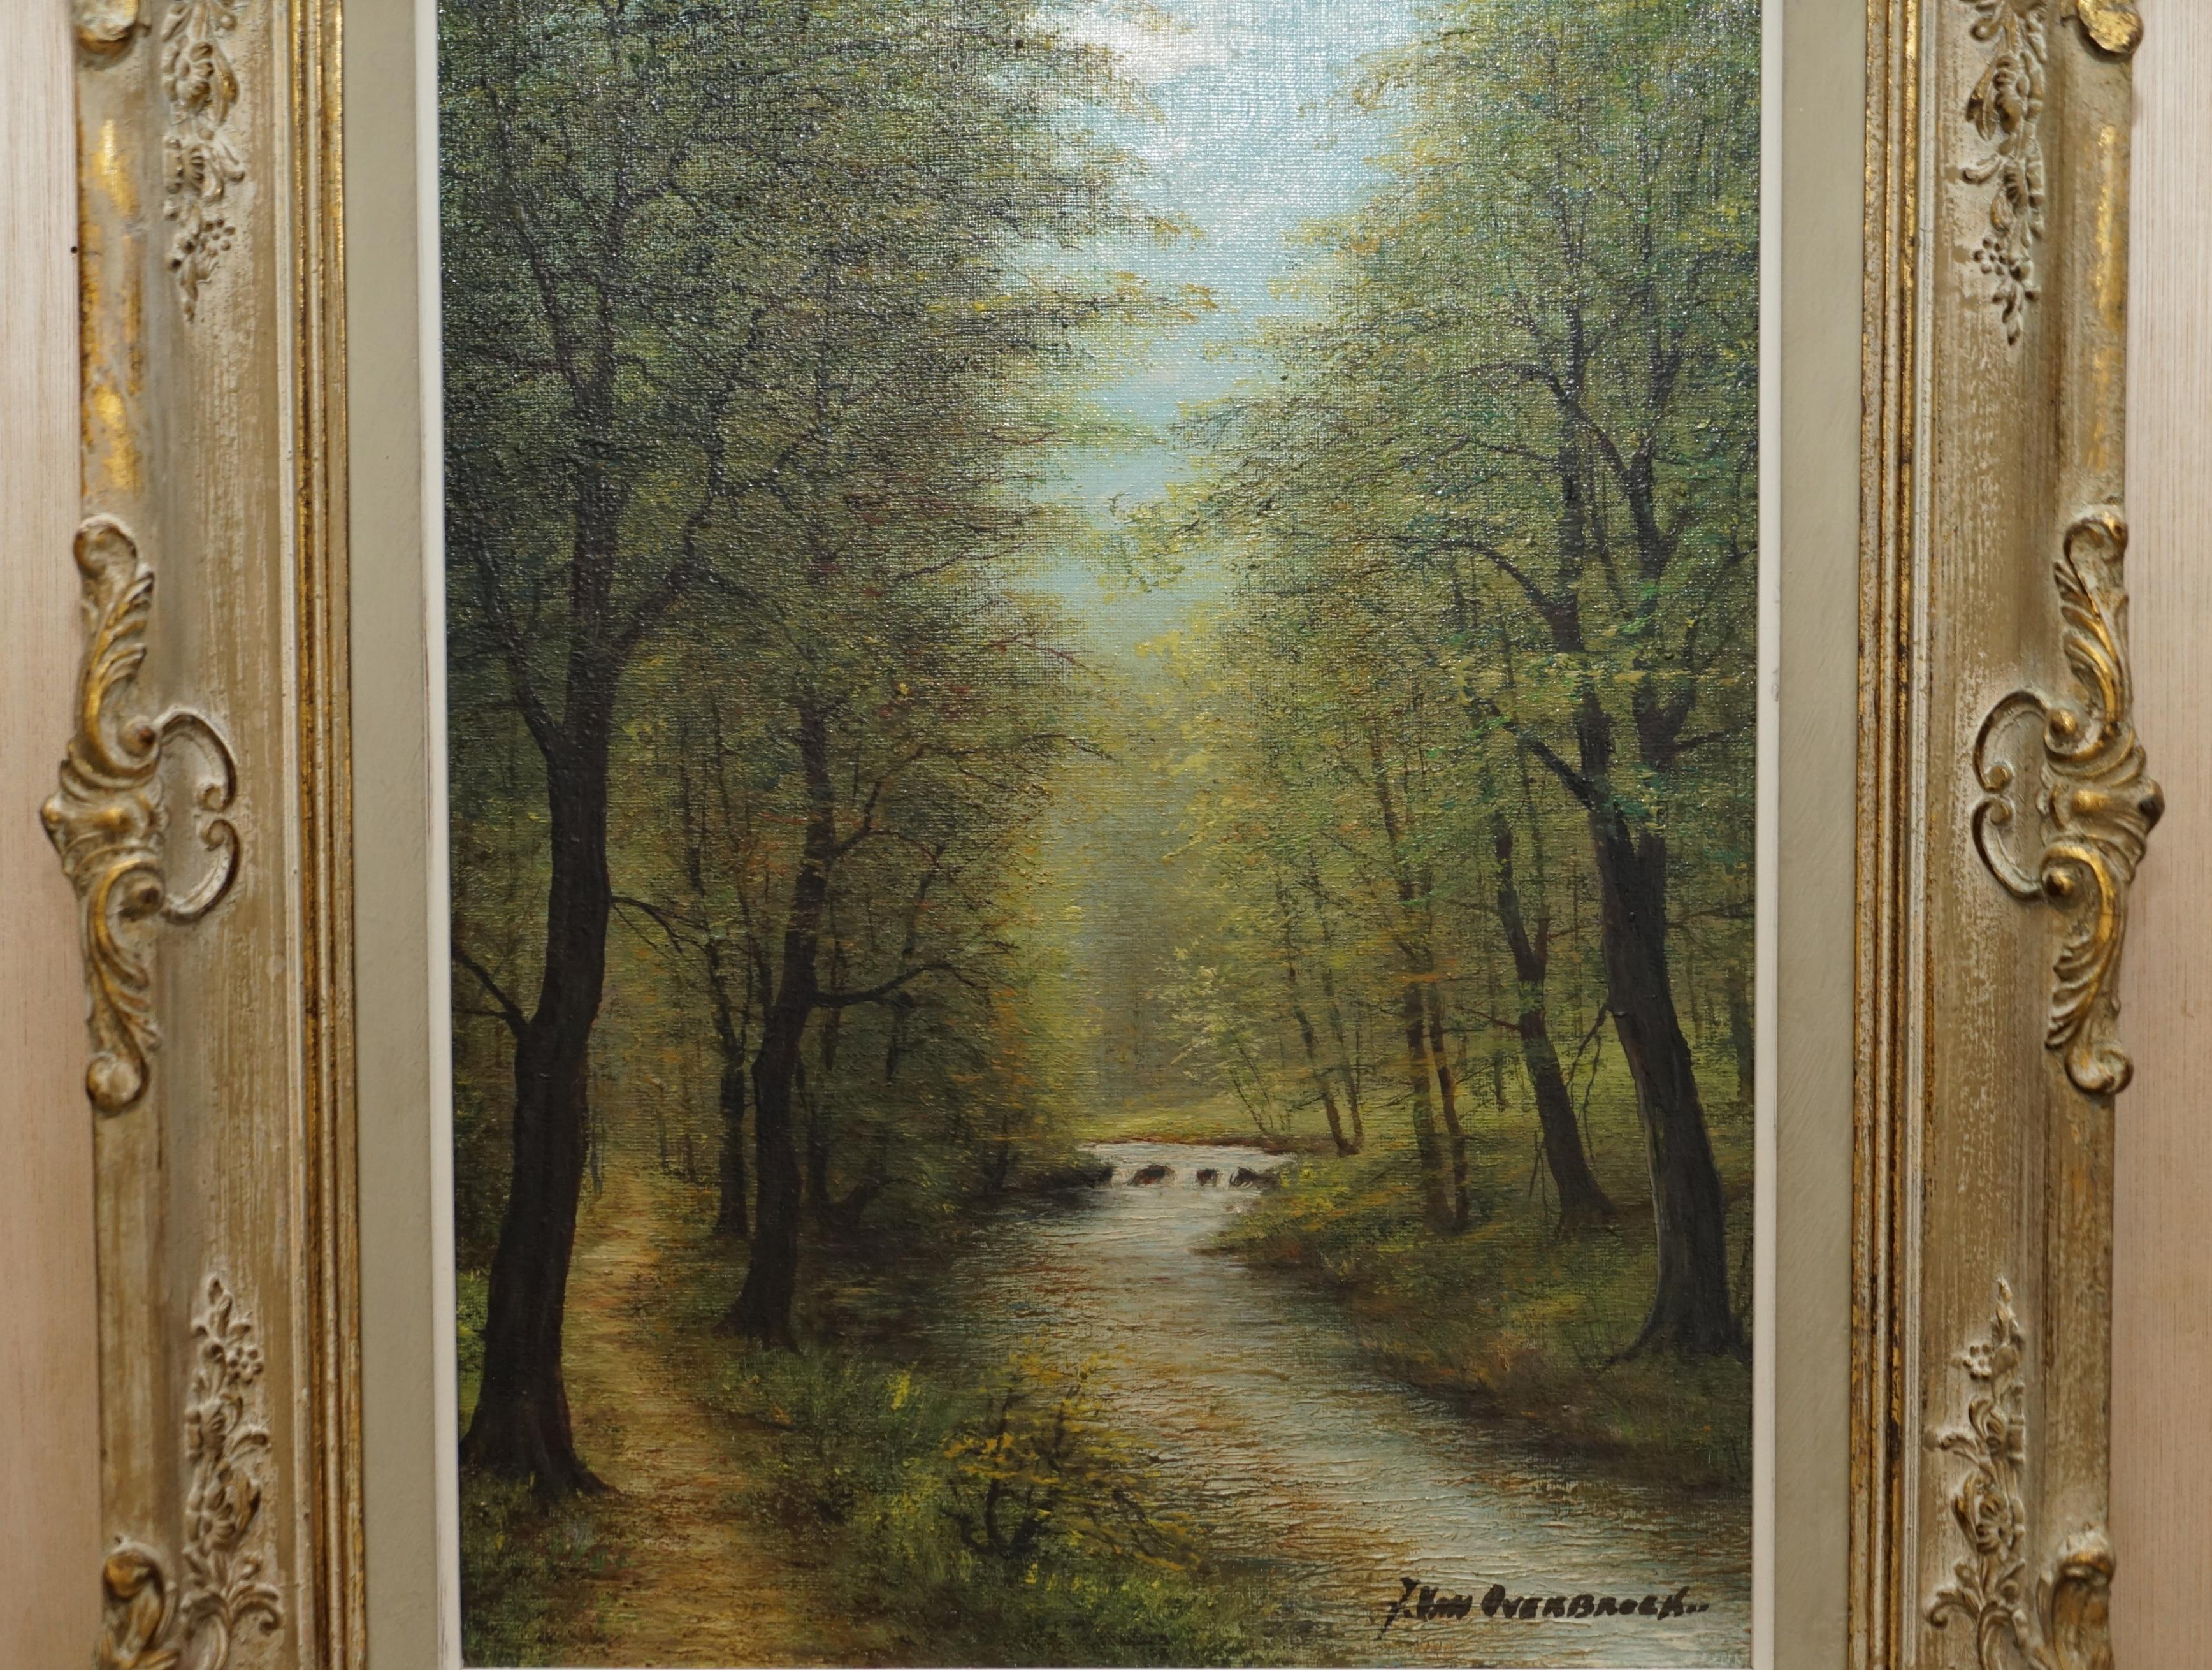 Wir freuen uns, dieses wunderschöne flämische Ölgemälde aus dem späten 19. Jahrhundert, signiert Van Overbroek, das eine schöne Naturszene zeigt, zum Verkauf anzubieten.

Eine sehr gut aussehende und dekorative Malerei, die Szene zeigt sehr heiter